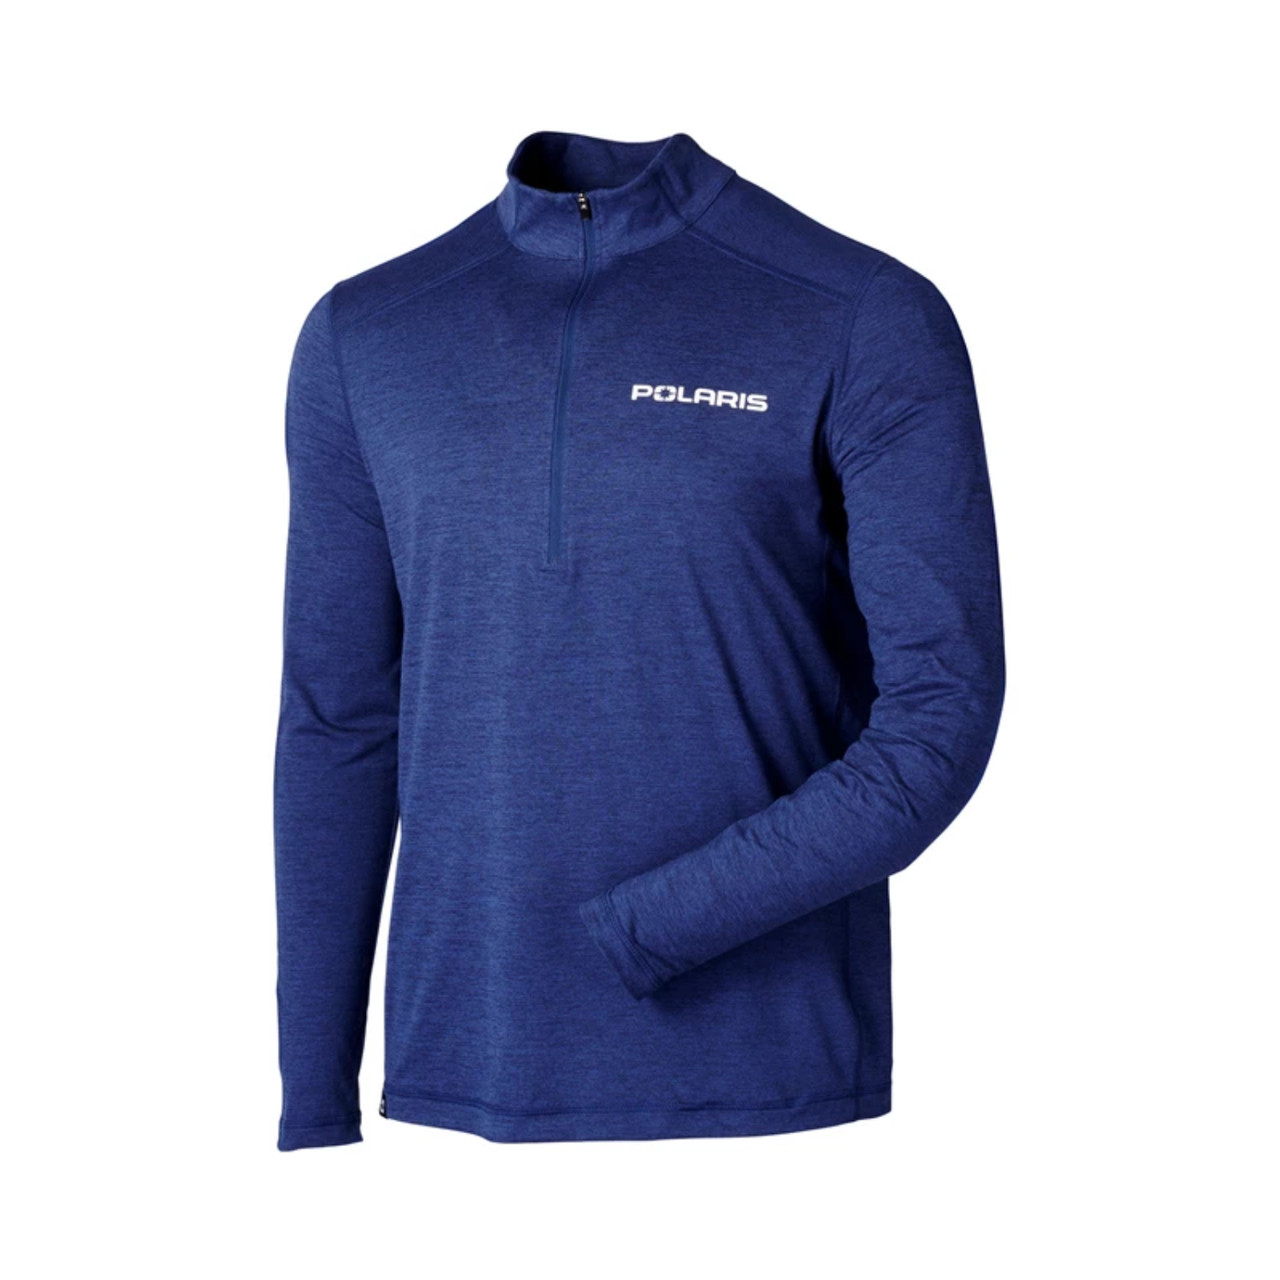 Polaris New OEM X-L Navy Men's Flexible Fit Adapt Quarter-Zip Shirt, 286252309